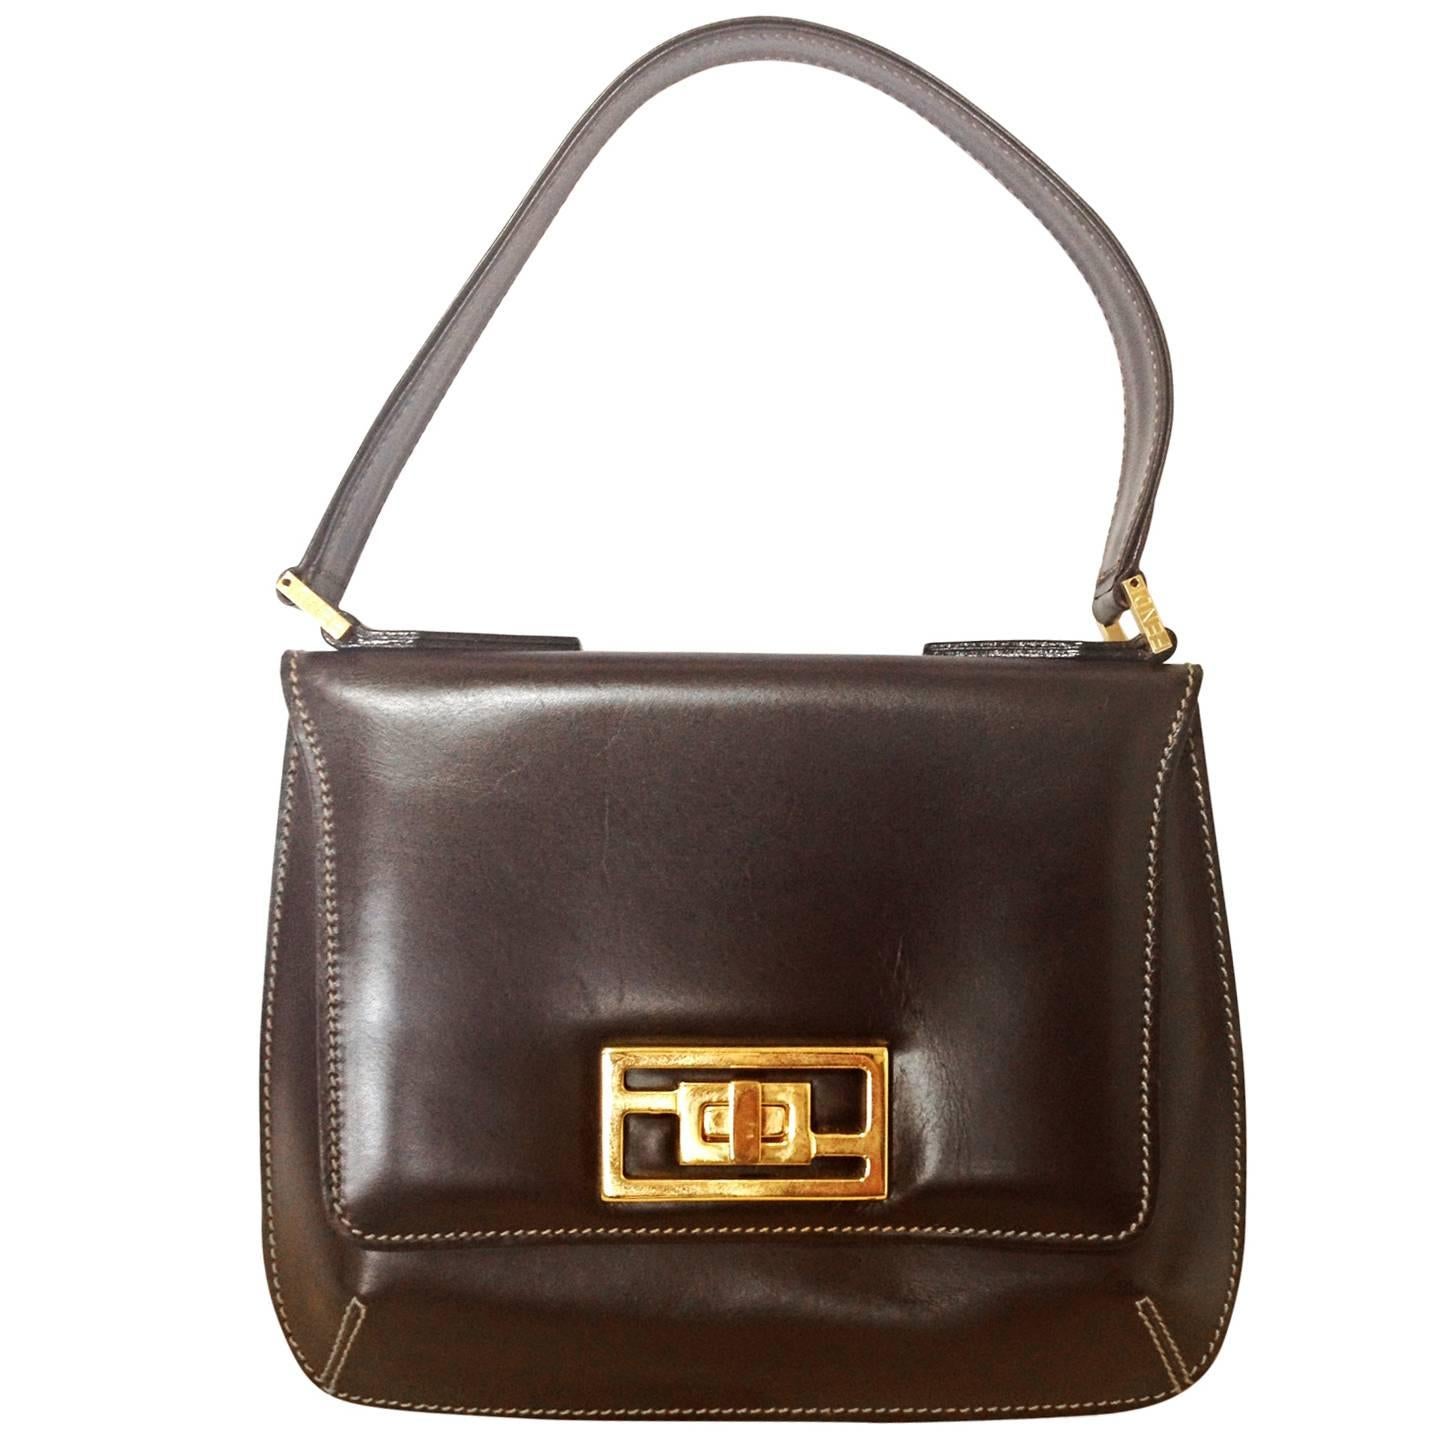 Vintage FENDI genuine dark brown leather handbag with golden FF logo at closure. For Sale